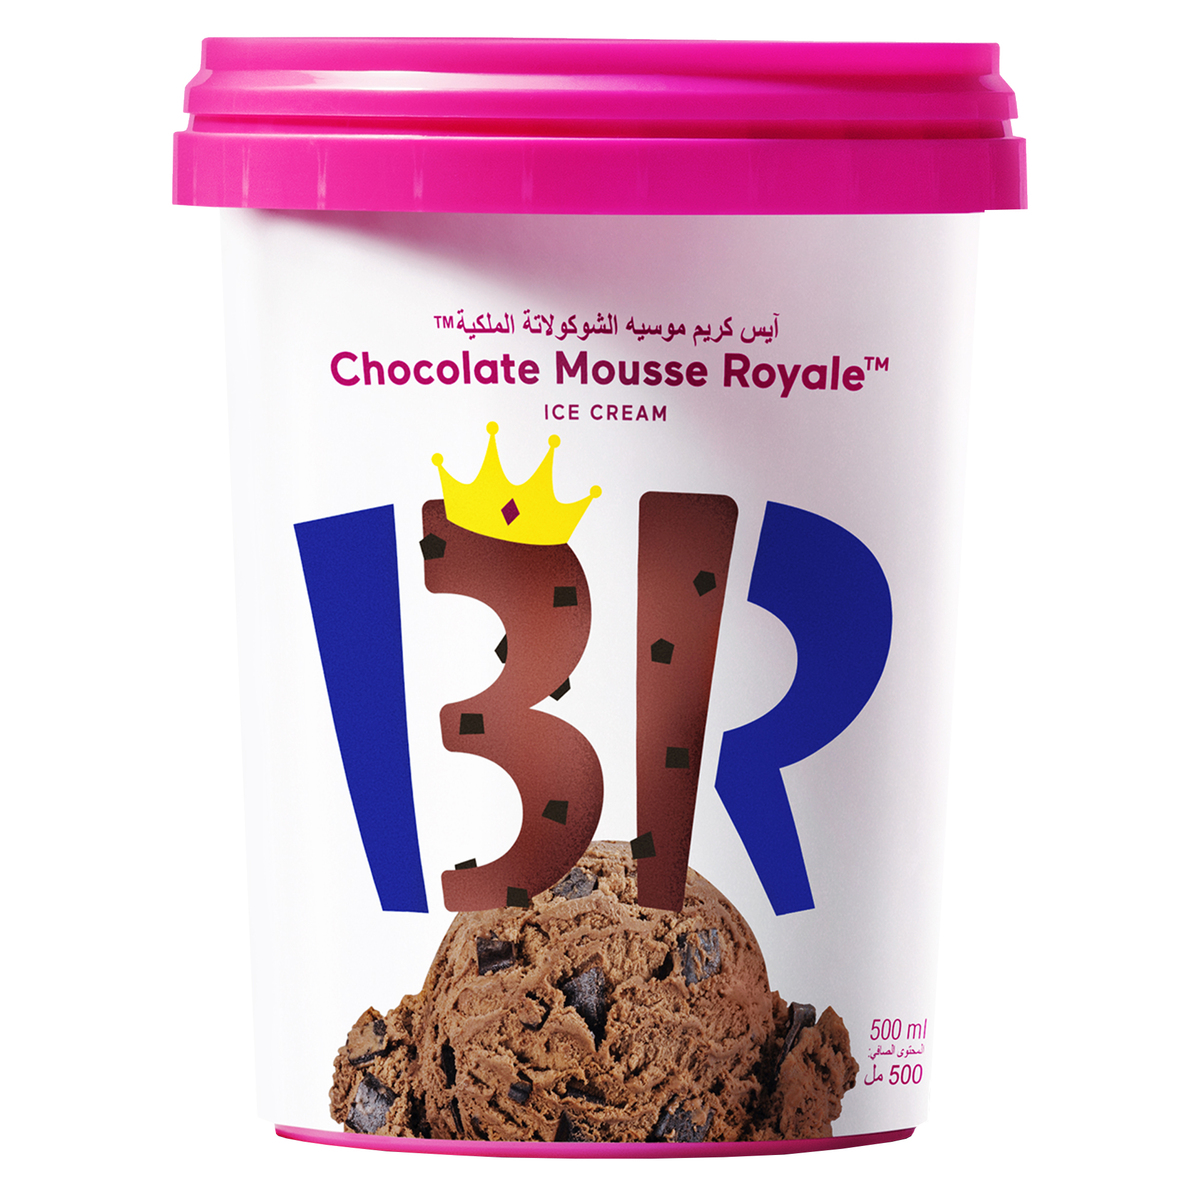 اشتري قم بشراء باسكن روبنز آيس كريم شوكولاتة موس رويال 500 مل Online at Best Price من الموقع - من لولو هايبر ماركت Ice Cream Take Home في السعودية